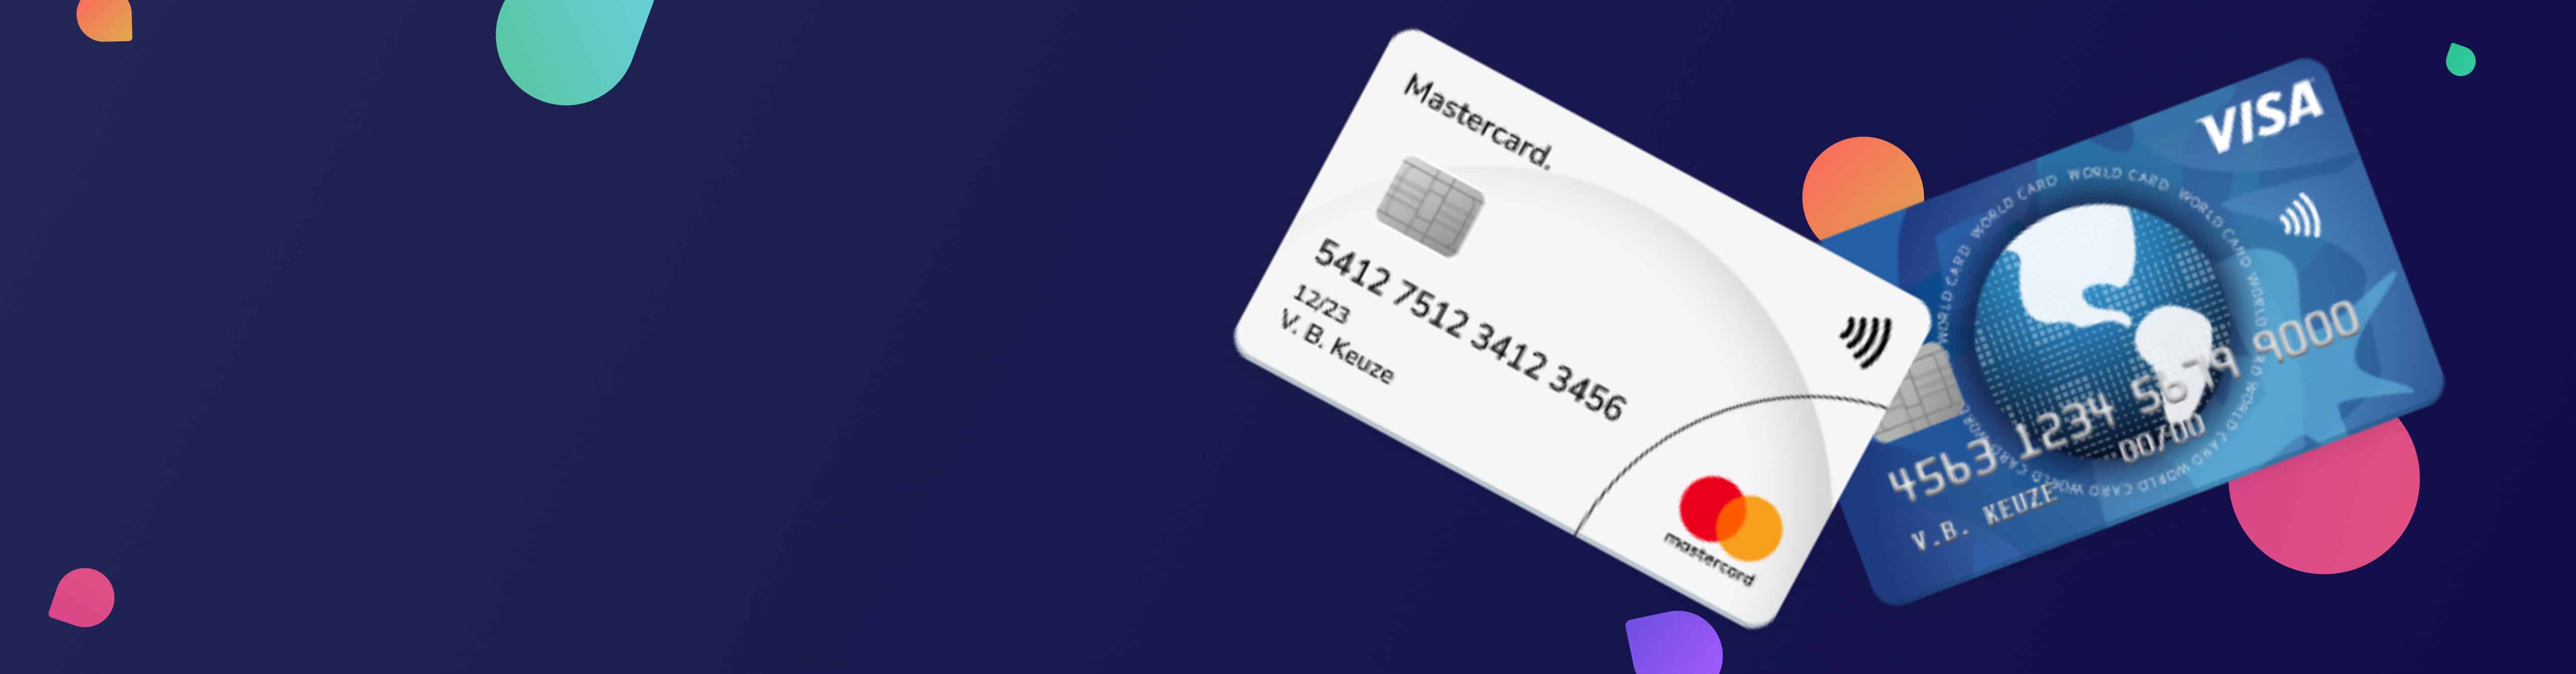 Fluisteren auditie herstel De beste creditcards van 2022 volgens Keuze.nl | Providers.nl